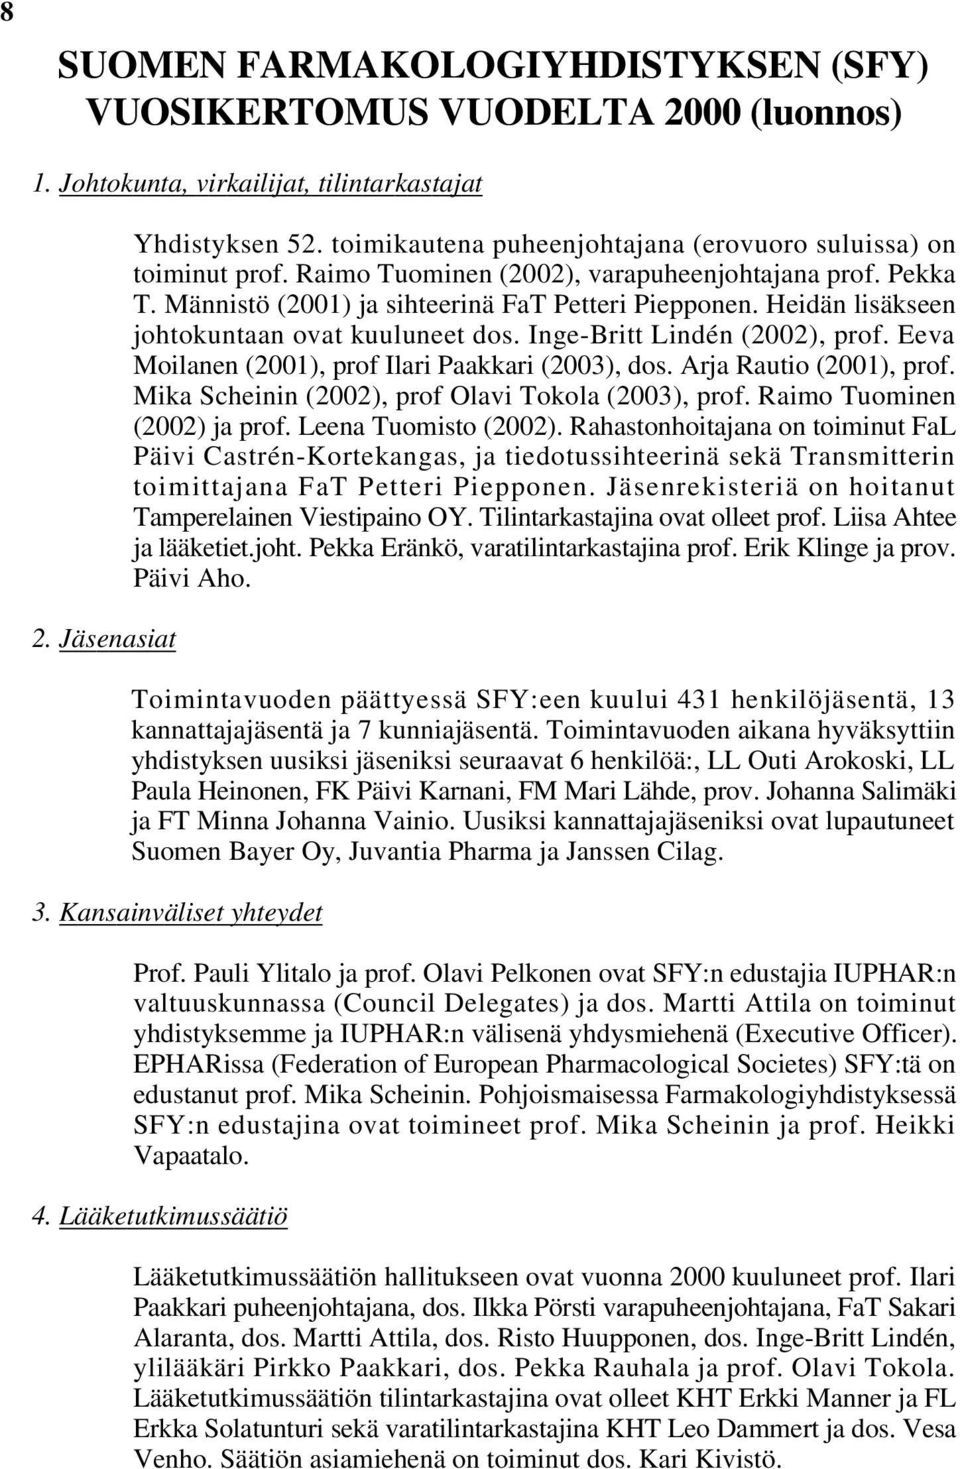 Heidän lisäkseen johtokuntaan ovat kuuluneet dos. Inge-Britt Lindén (2002), prof. Eeva Moilanen (2001), prof Ilari Paakkari (2003), dos. Arja Rautio (2001), prof.